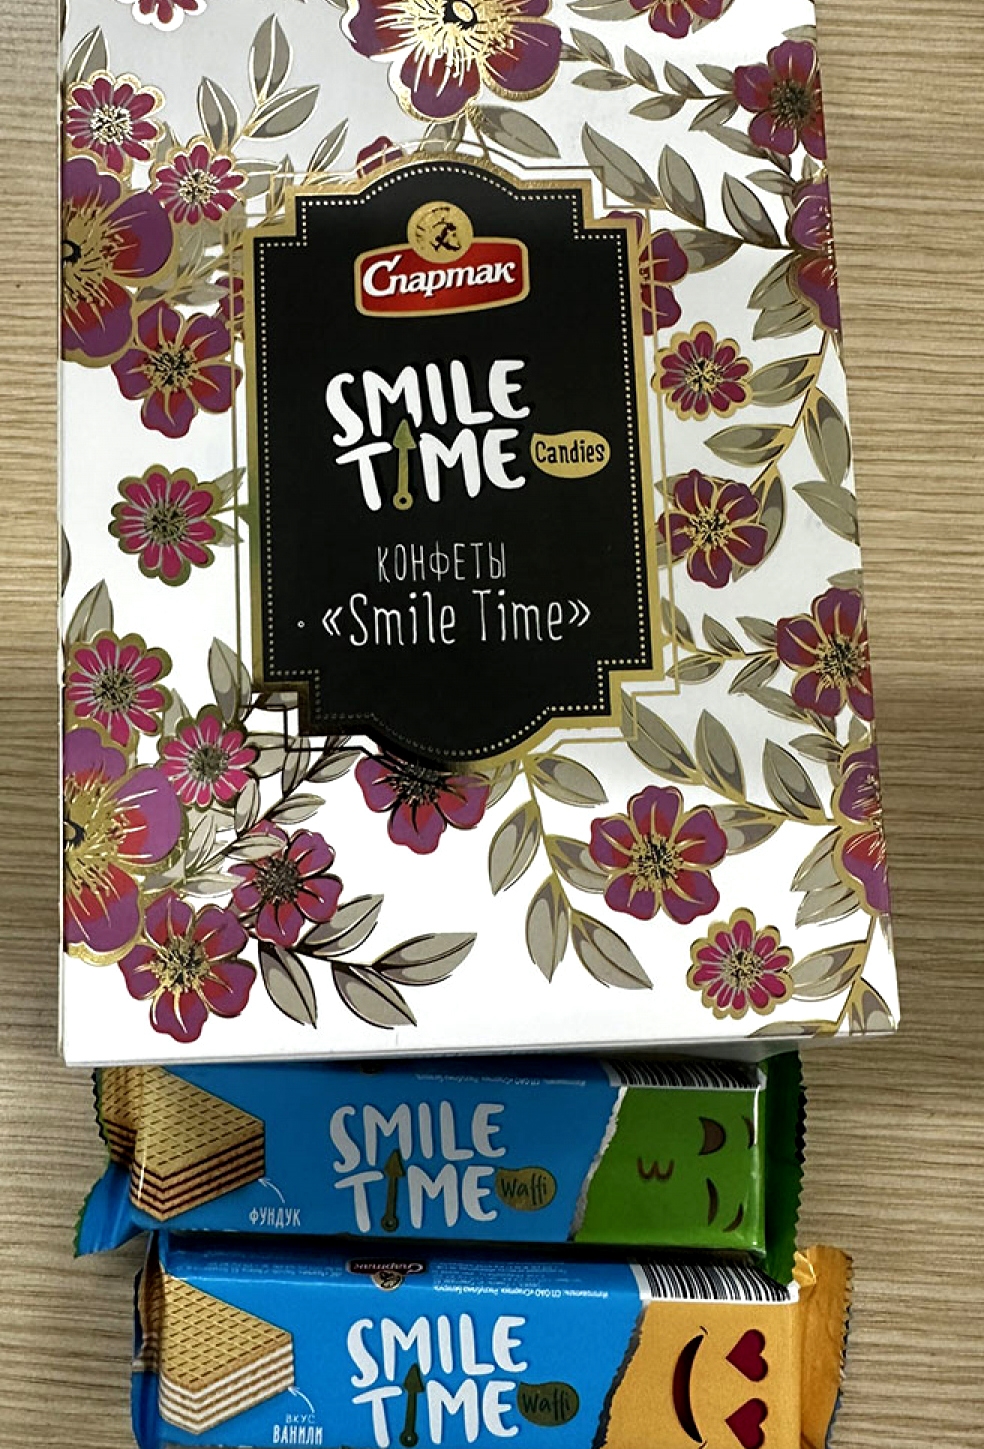 Hộp Bánh Smile Time, được nhập khẩu từ Belarus là 1 sản phẩm trong gói quà Tết có dấu hiệu dập xoá, dán đè ngày sản xuất, hạn sử dụng mà Công ty Than Vàng Danh gửi tặng CBNV, người lao động